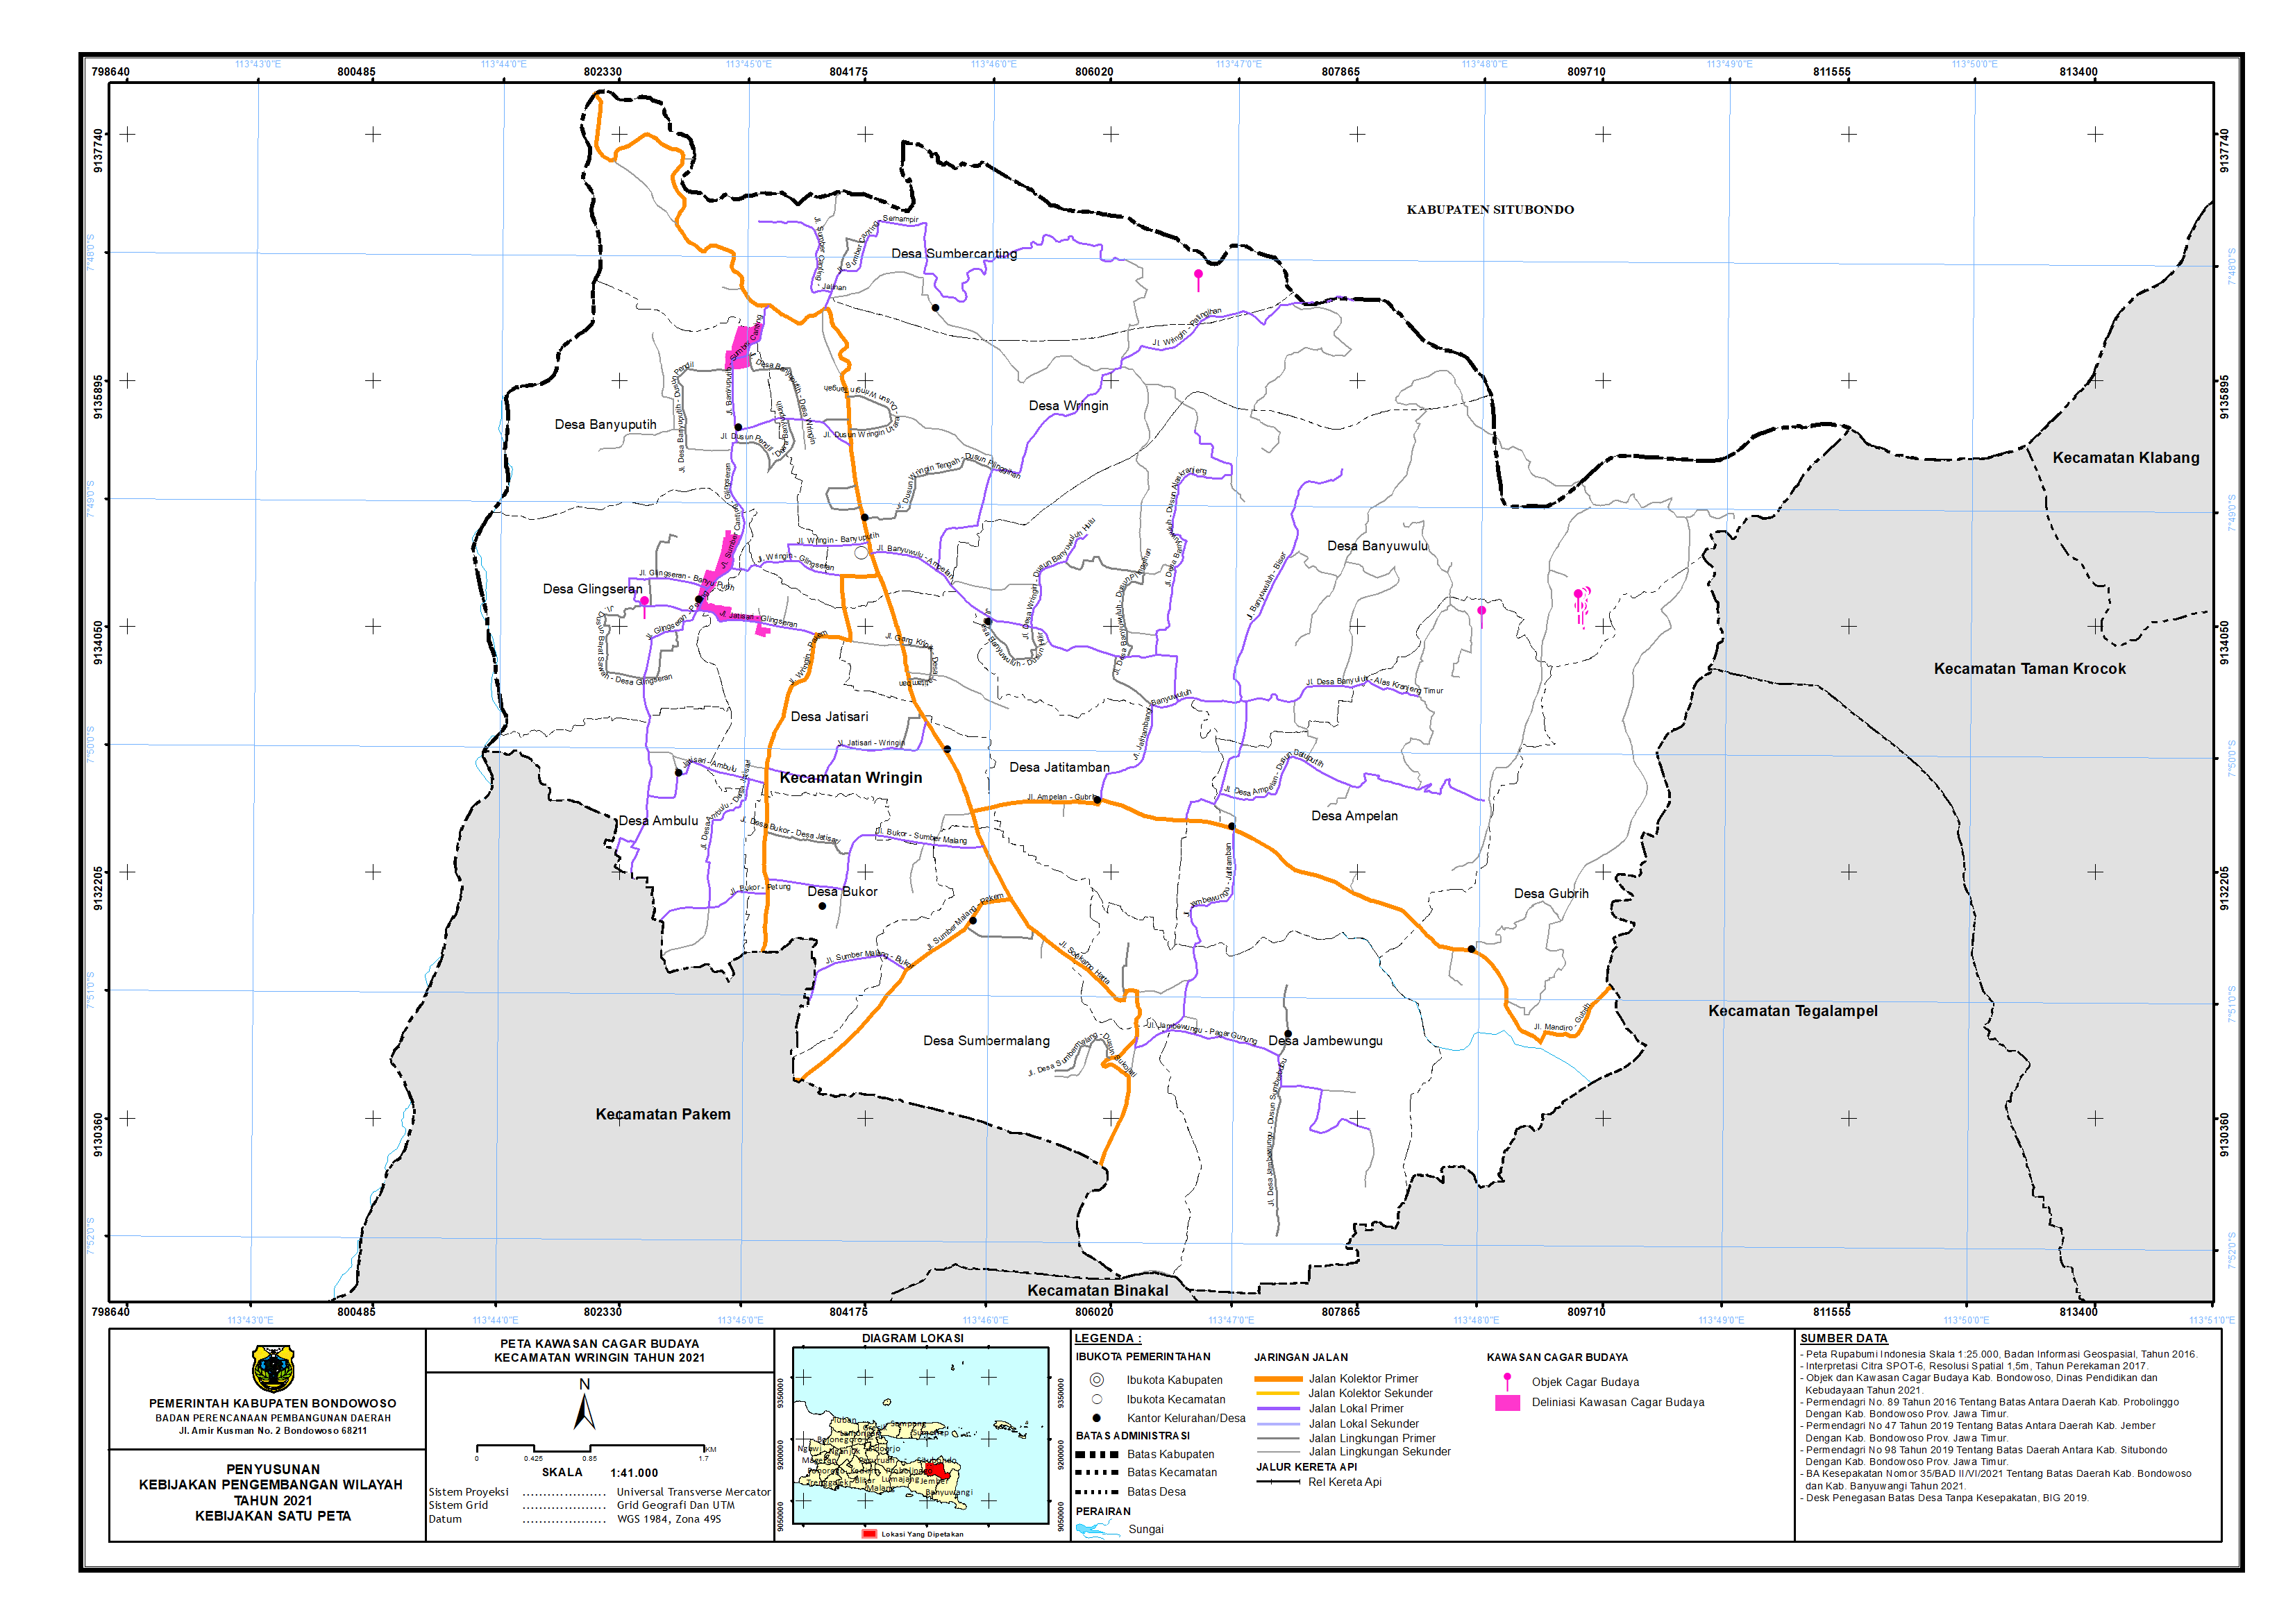 Peta Kawasan Cagar Budaya Kecamatan Wringin.png